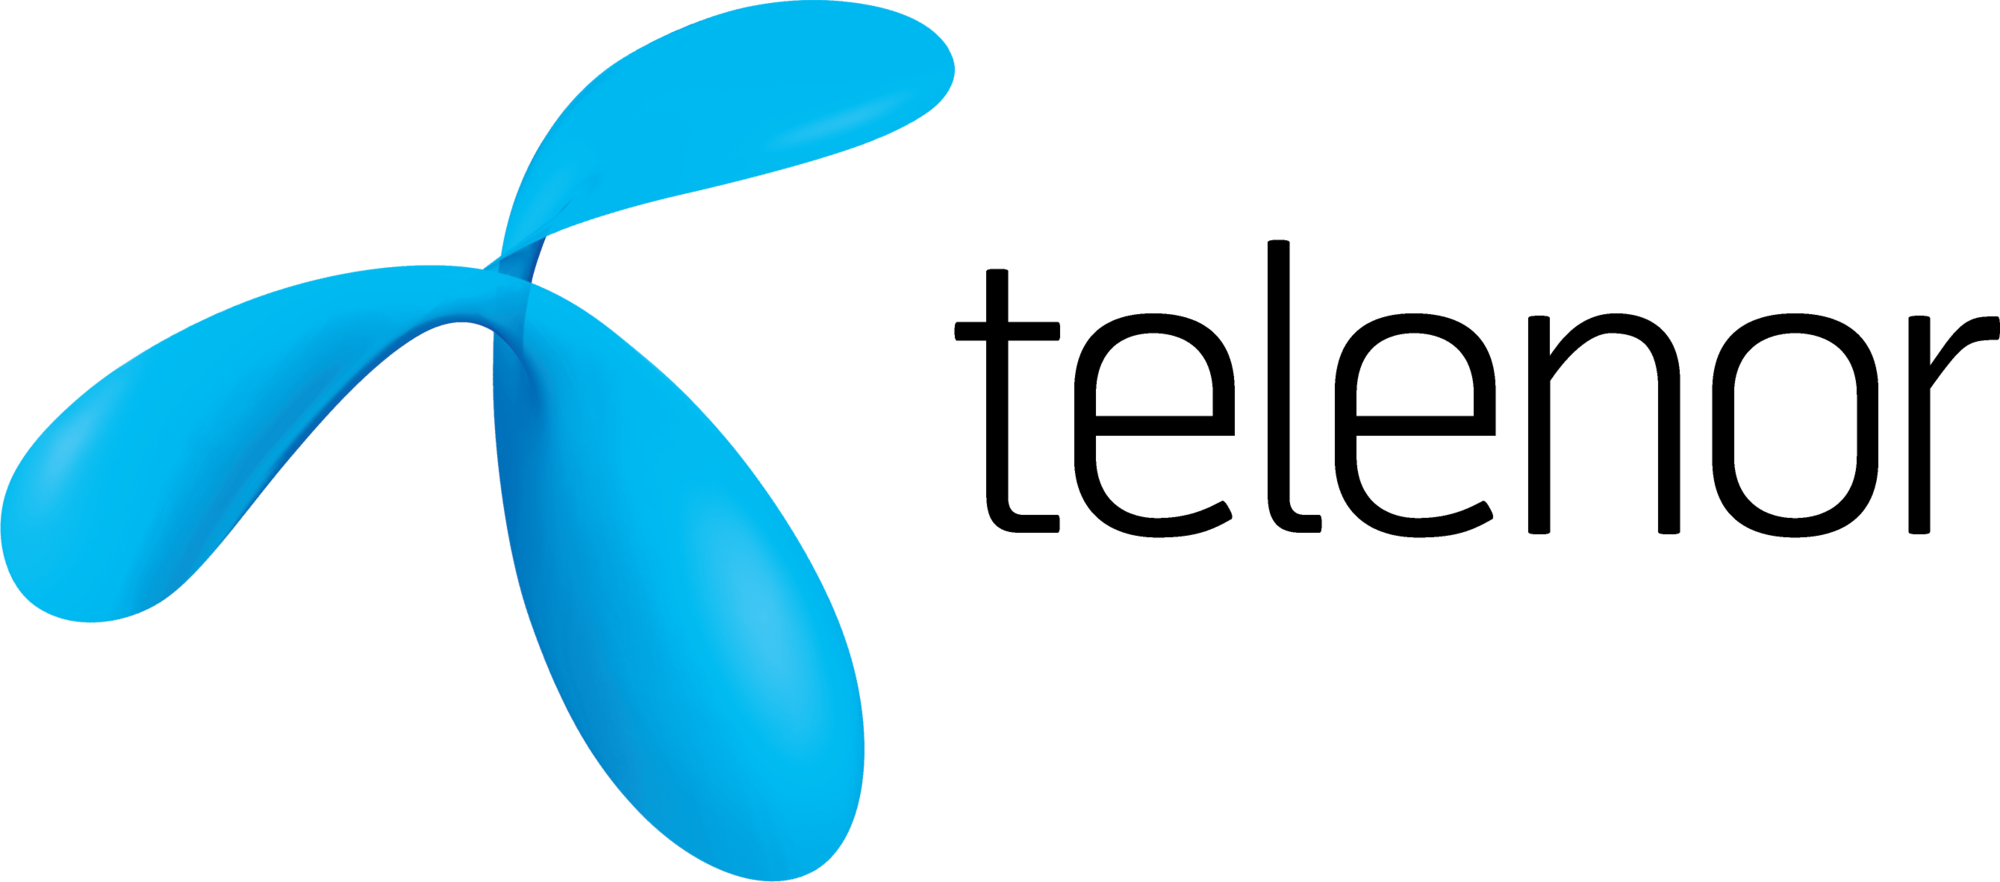 Telenor logo.png